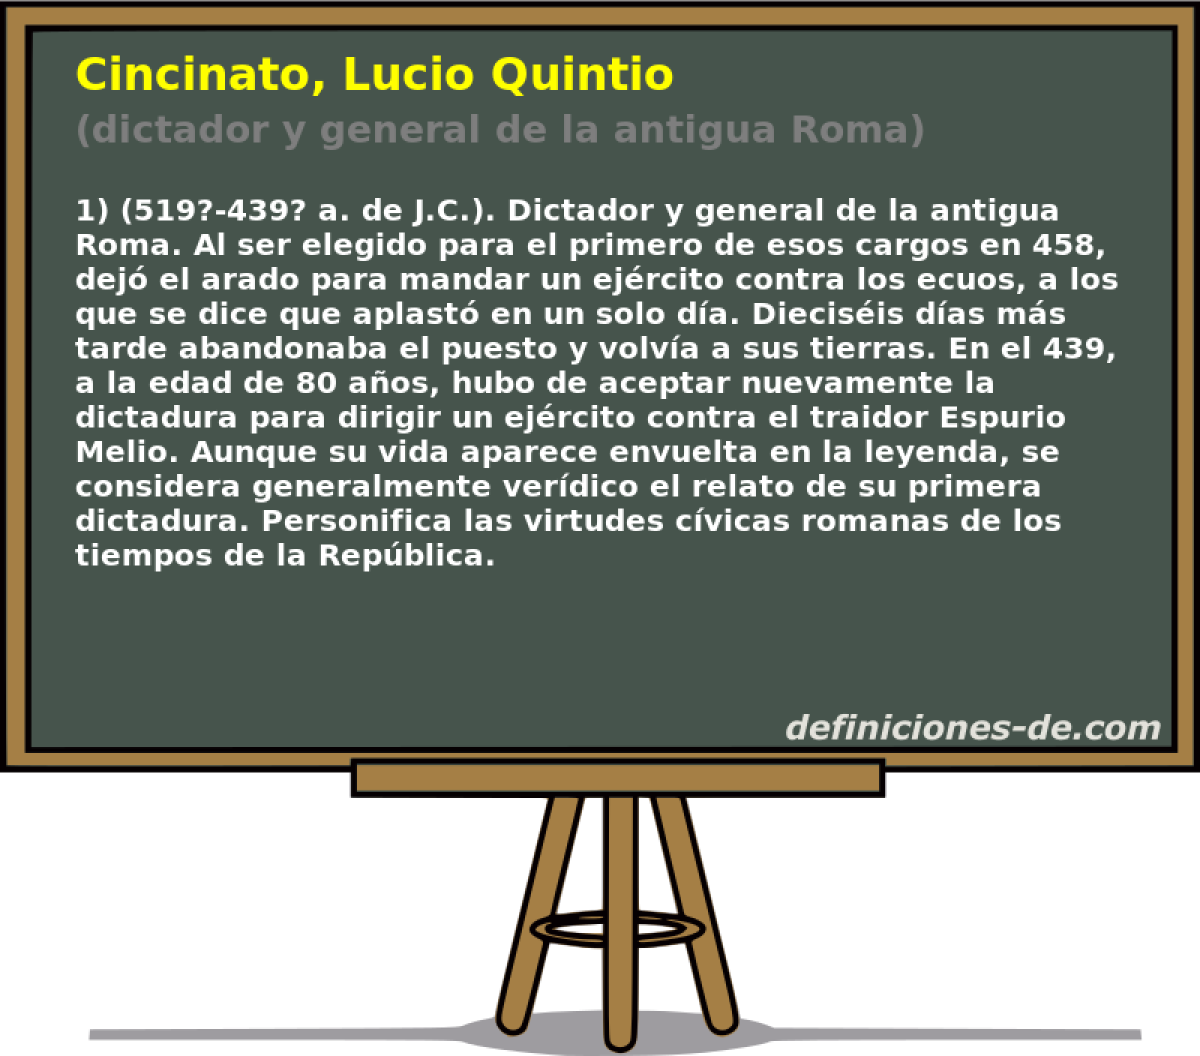 Cincinato, Lucio Quintio (dictador y general de la antigua Roma)